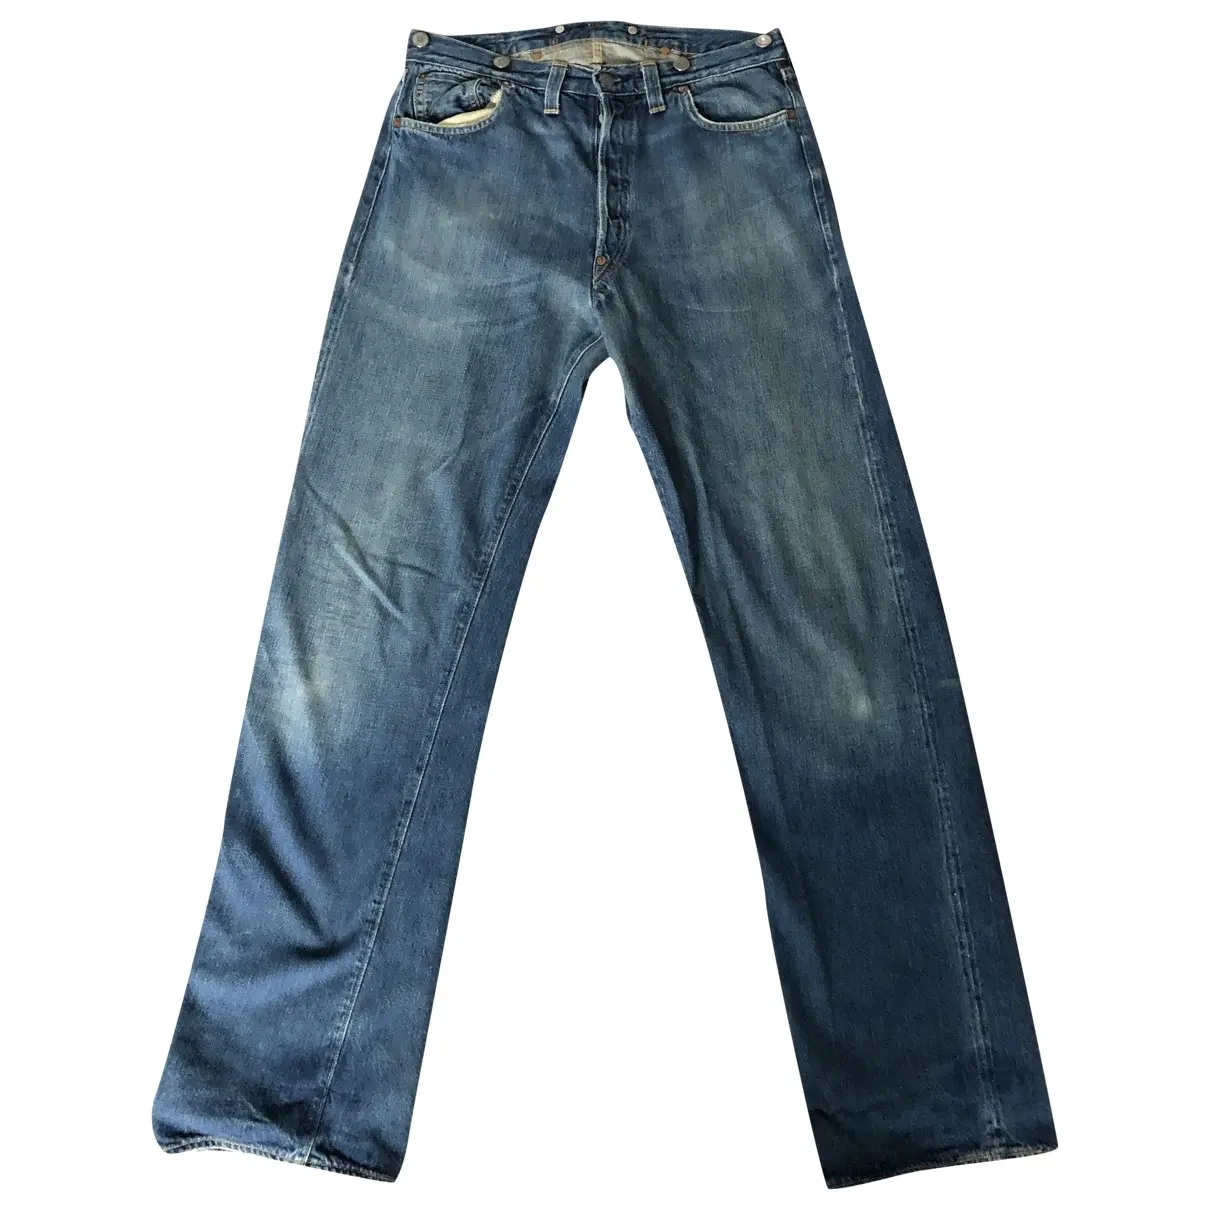 Blue Cotton Jeans Levi's Vintage Clothing - Vintage